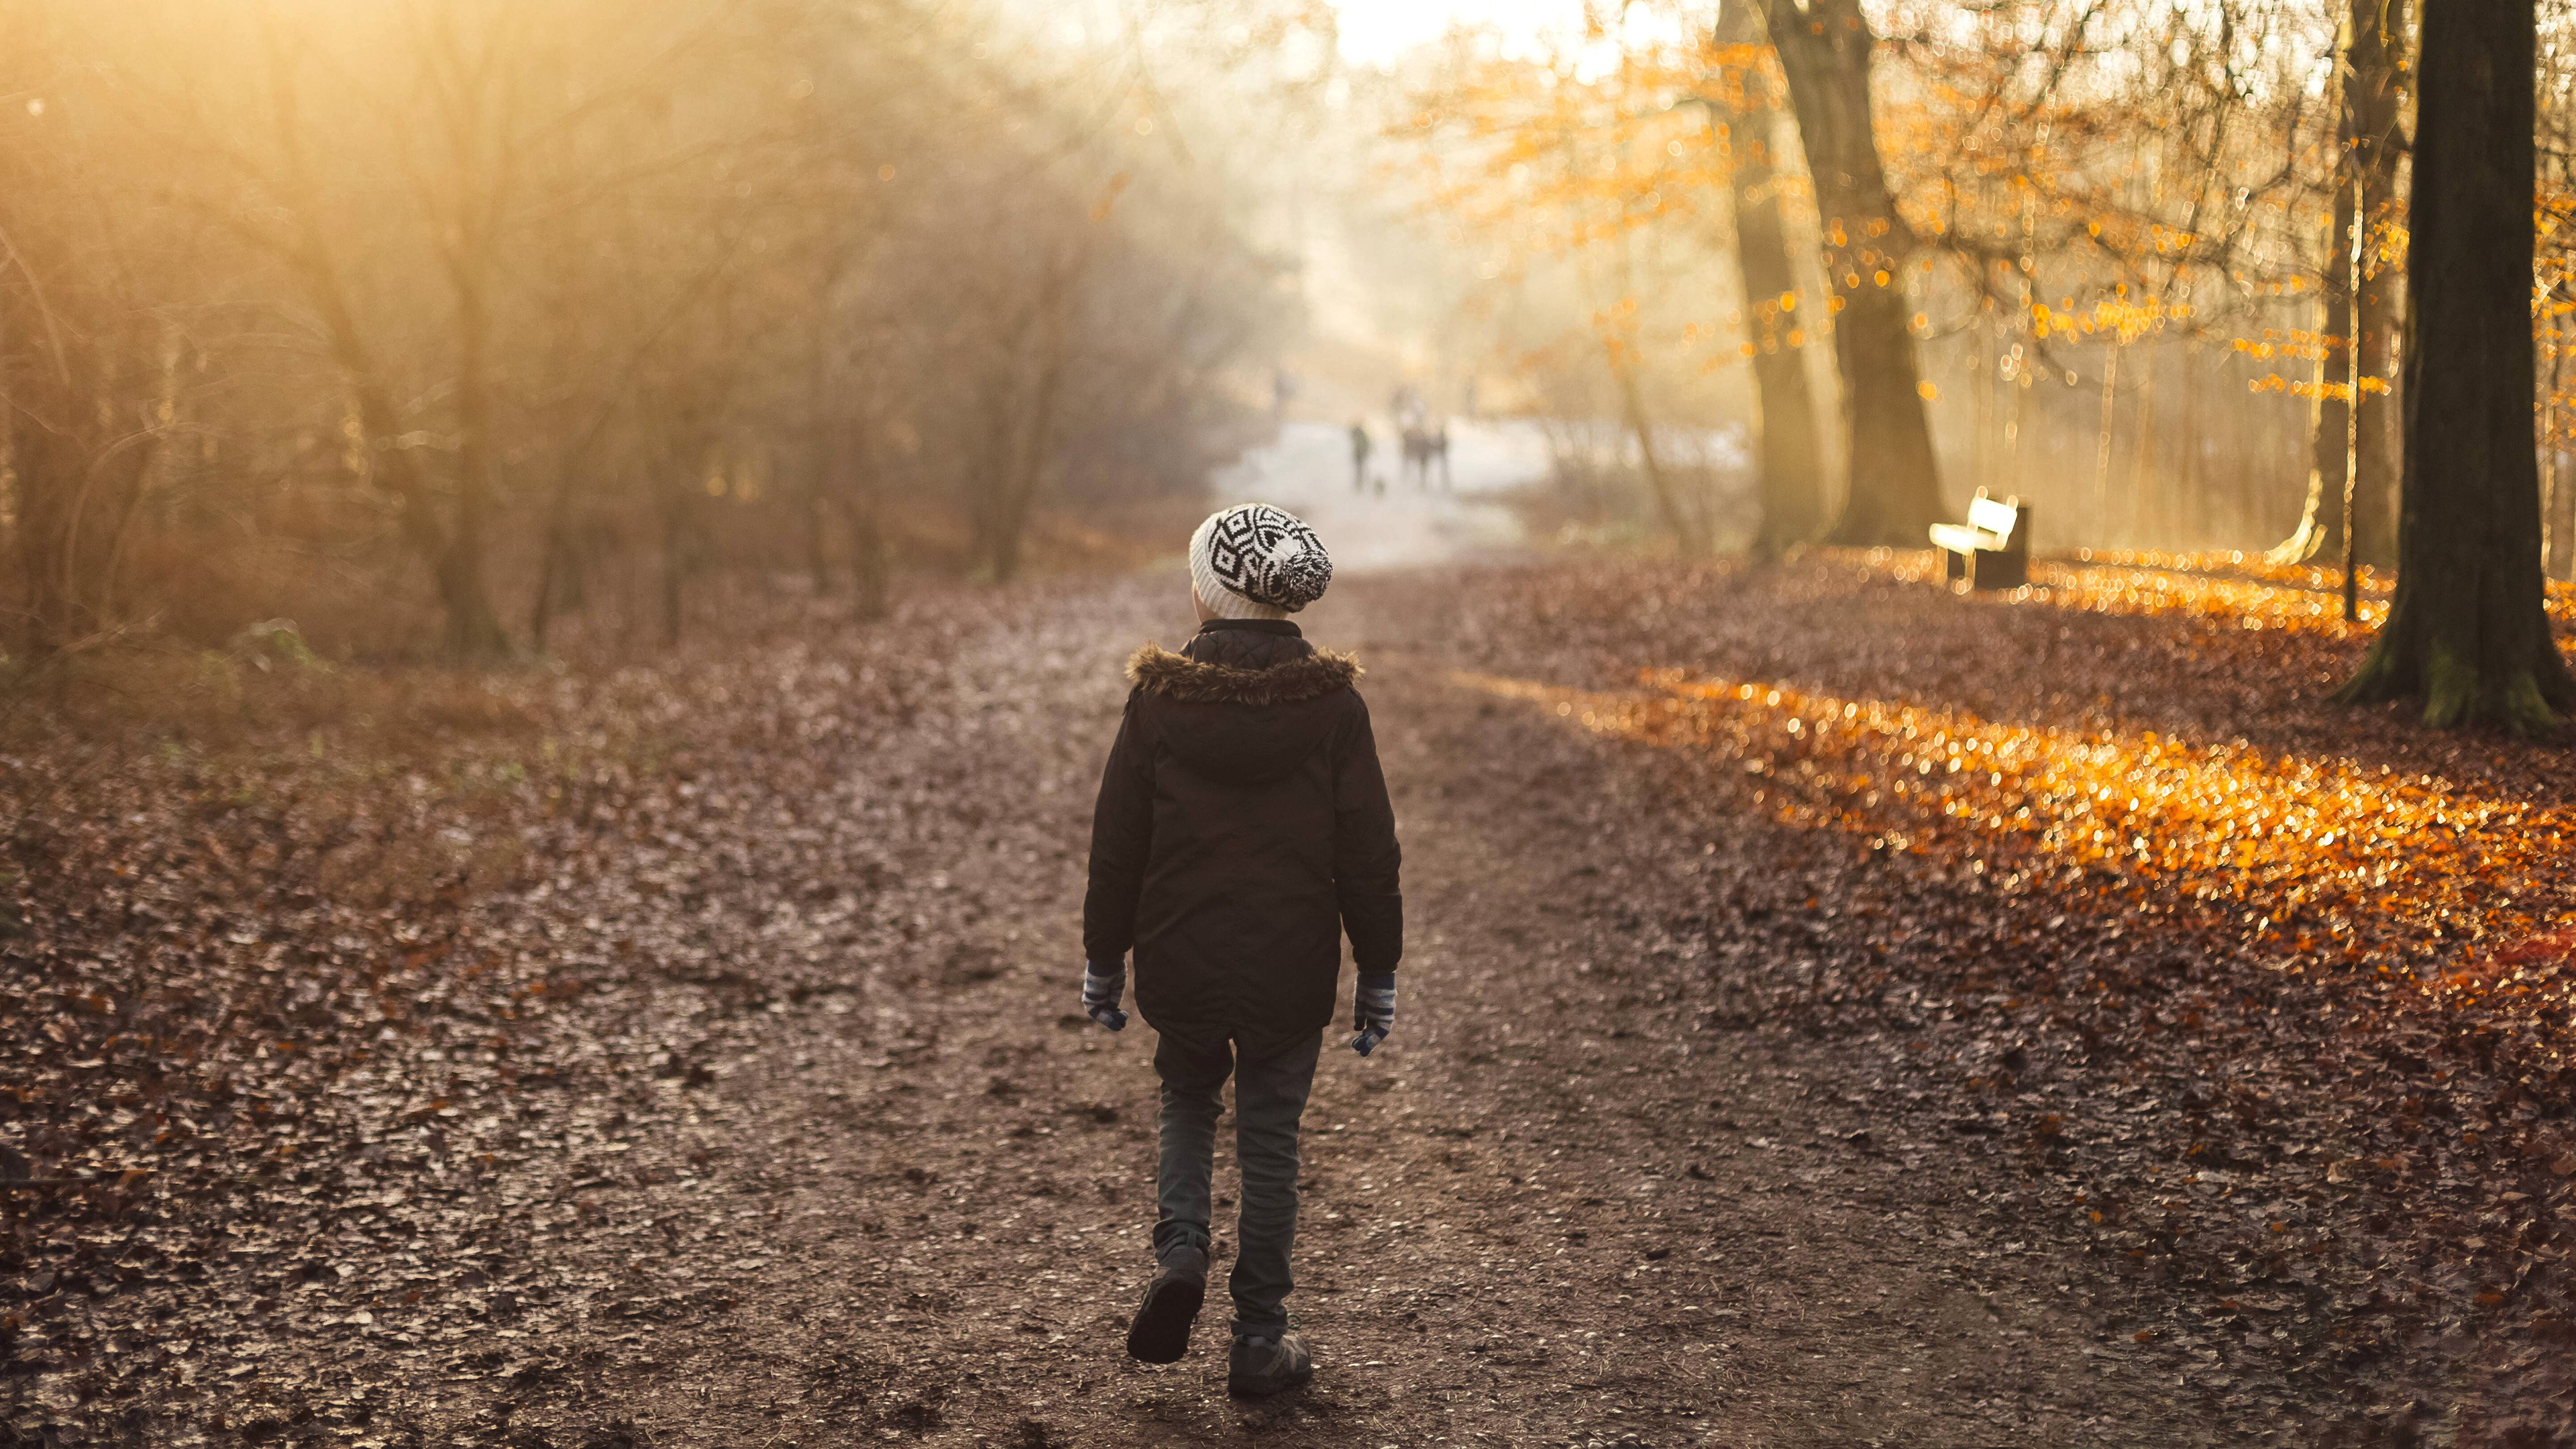 Junge geht winterlich angezogen einen sonnig-nebeligen Waldweg entlang